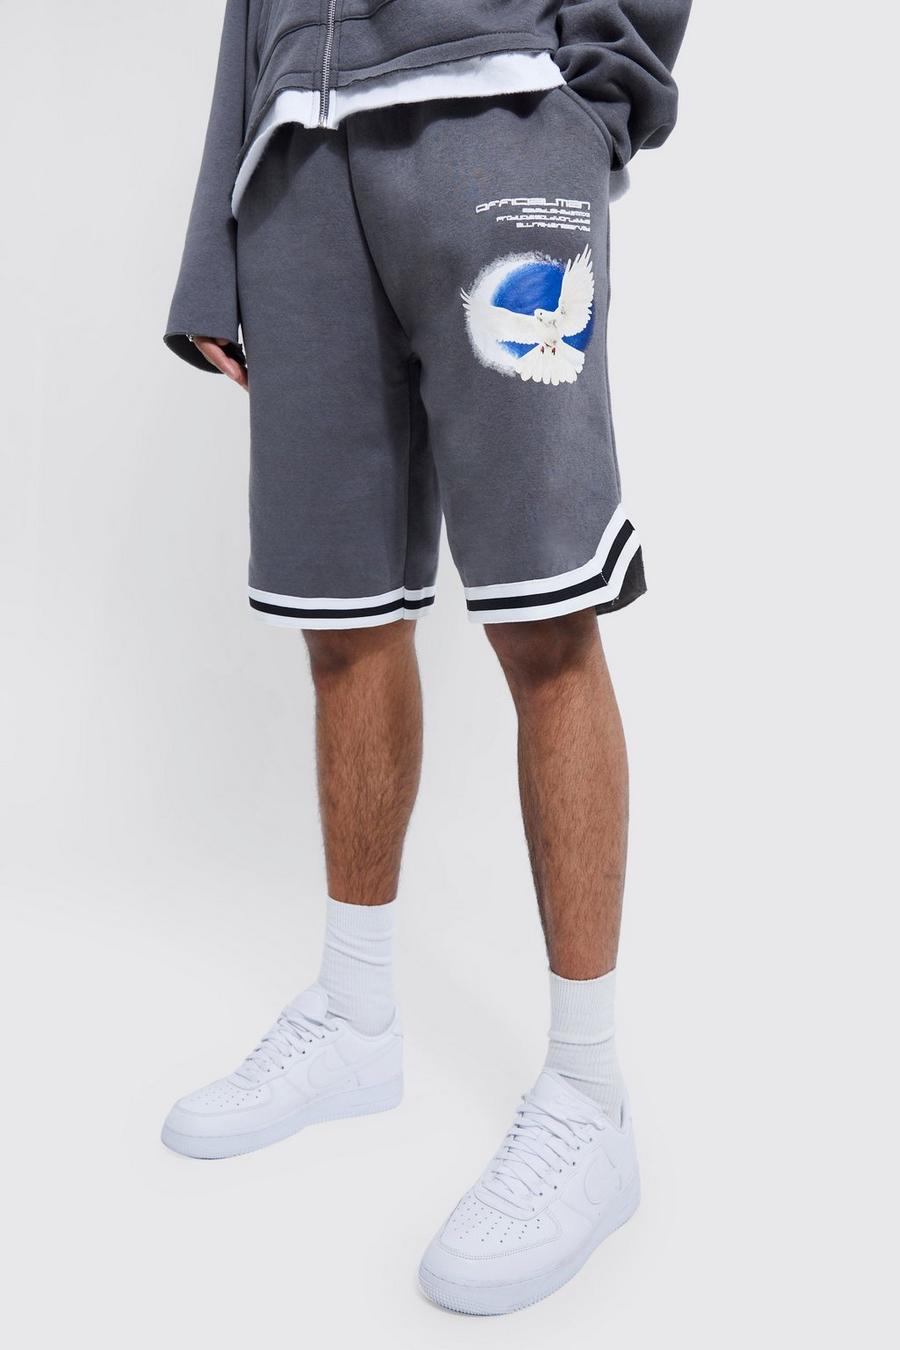 Pantalón corto Tall largo de baloncesto con cordón elástico y estampado gráfico, Charcoal image number 1